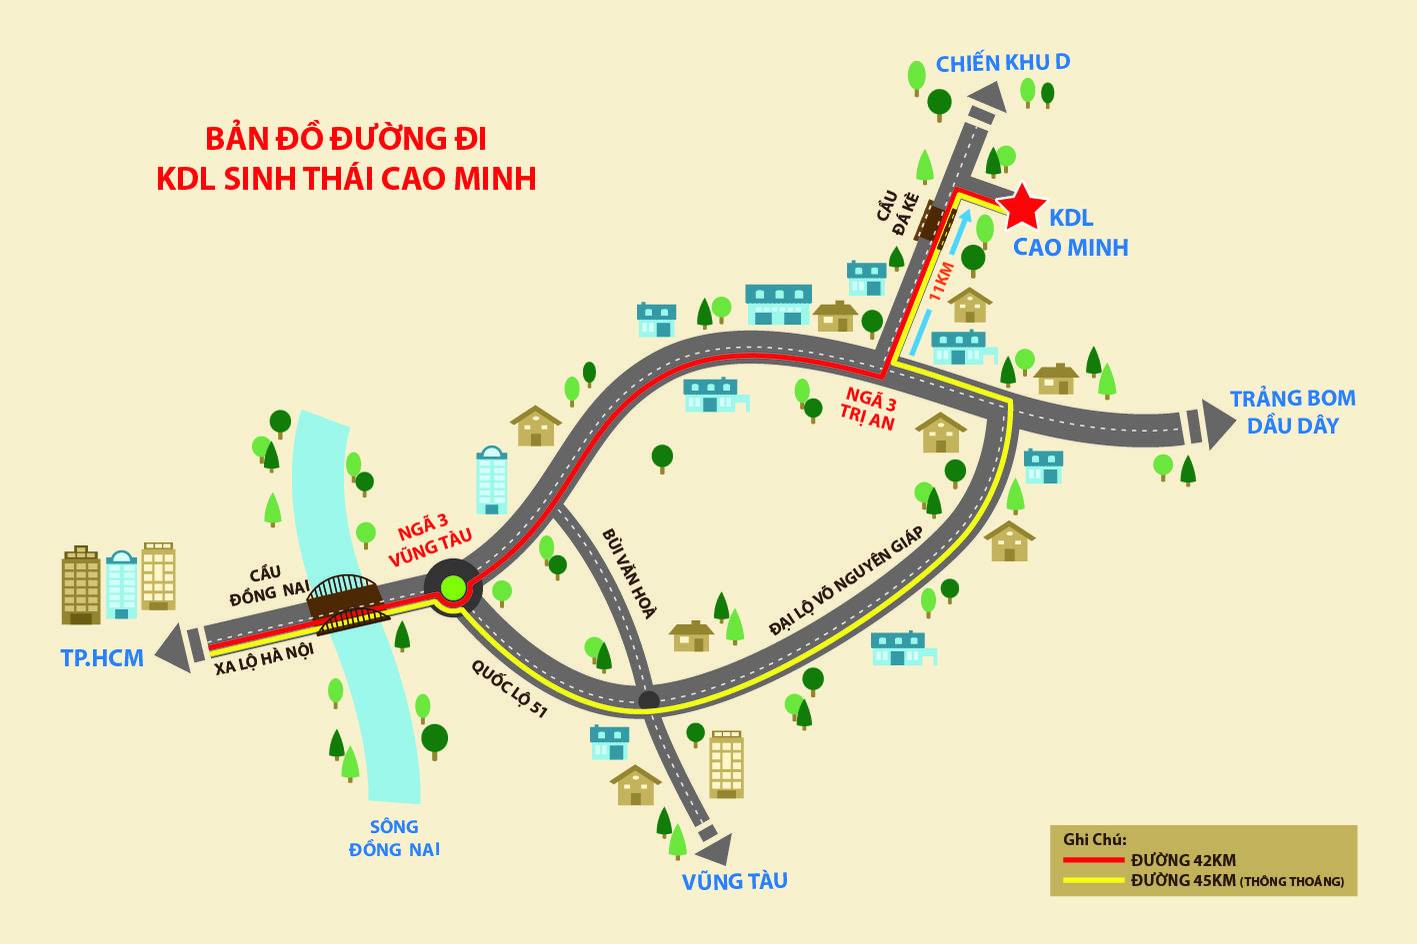 Bản đồ hướng dẫn di chuyển đến KDL Cao Minh